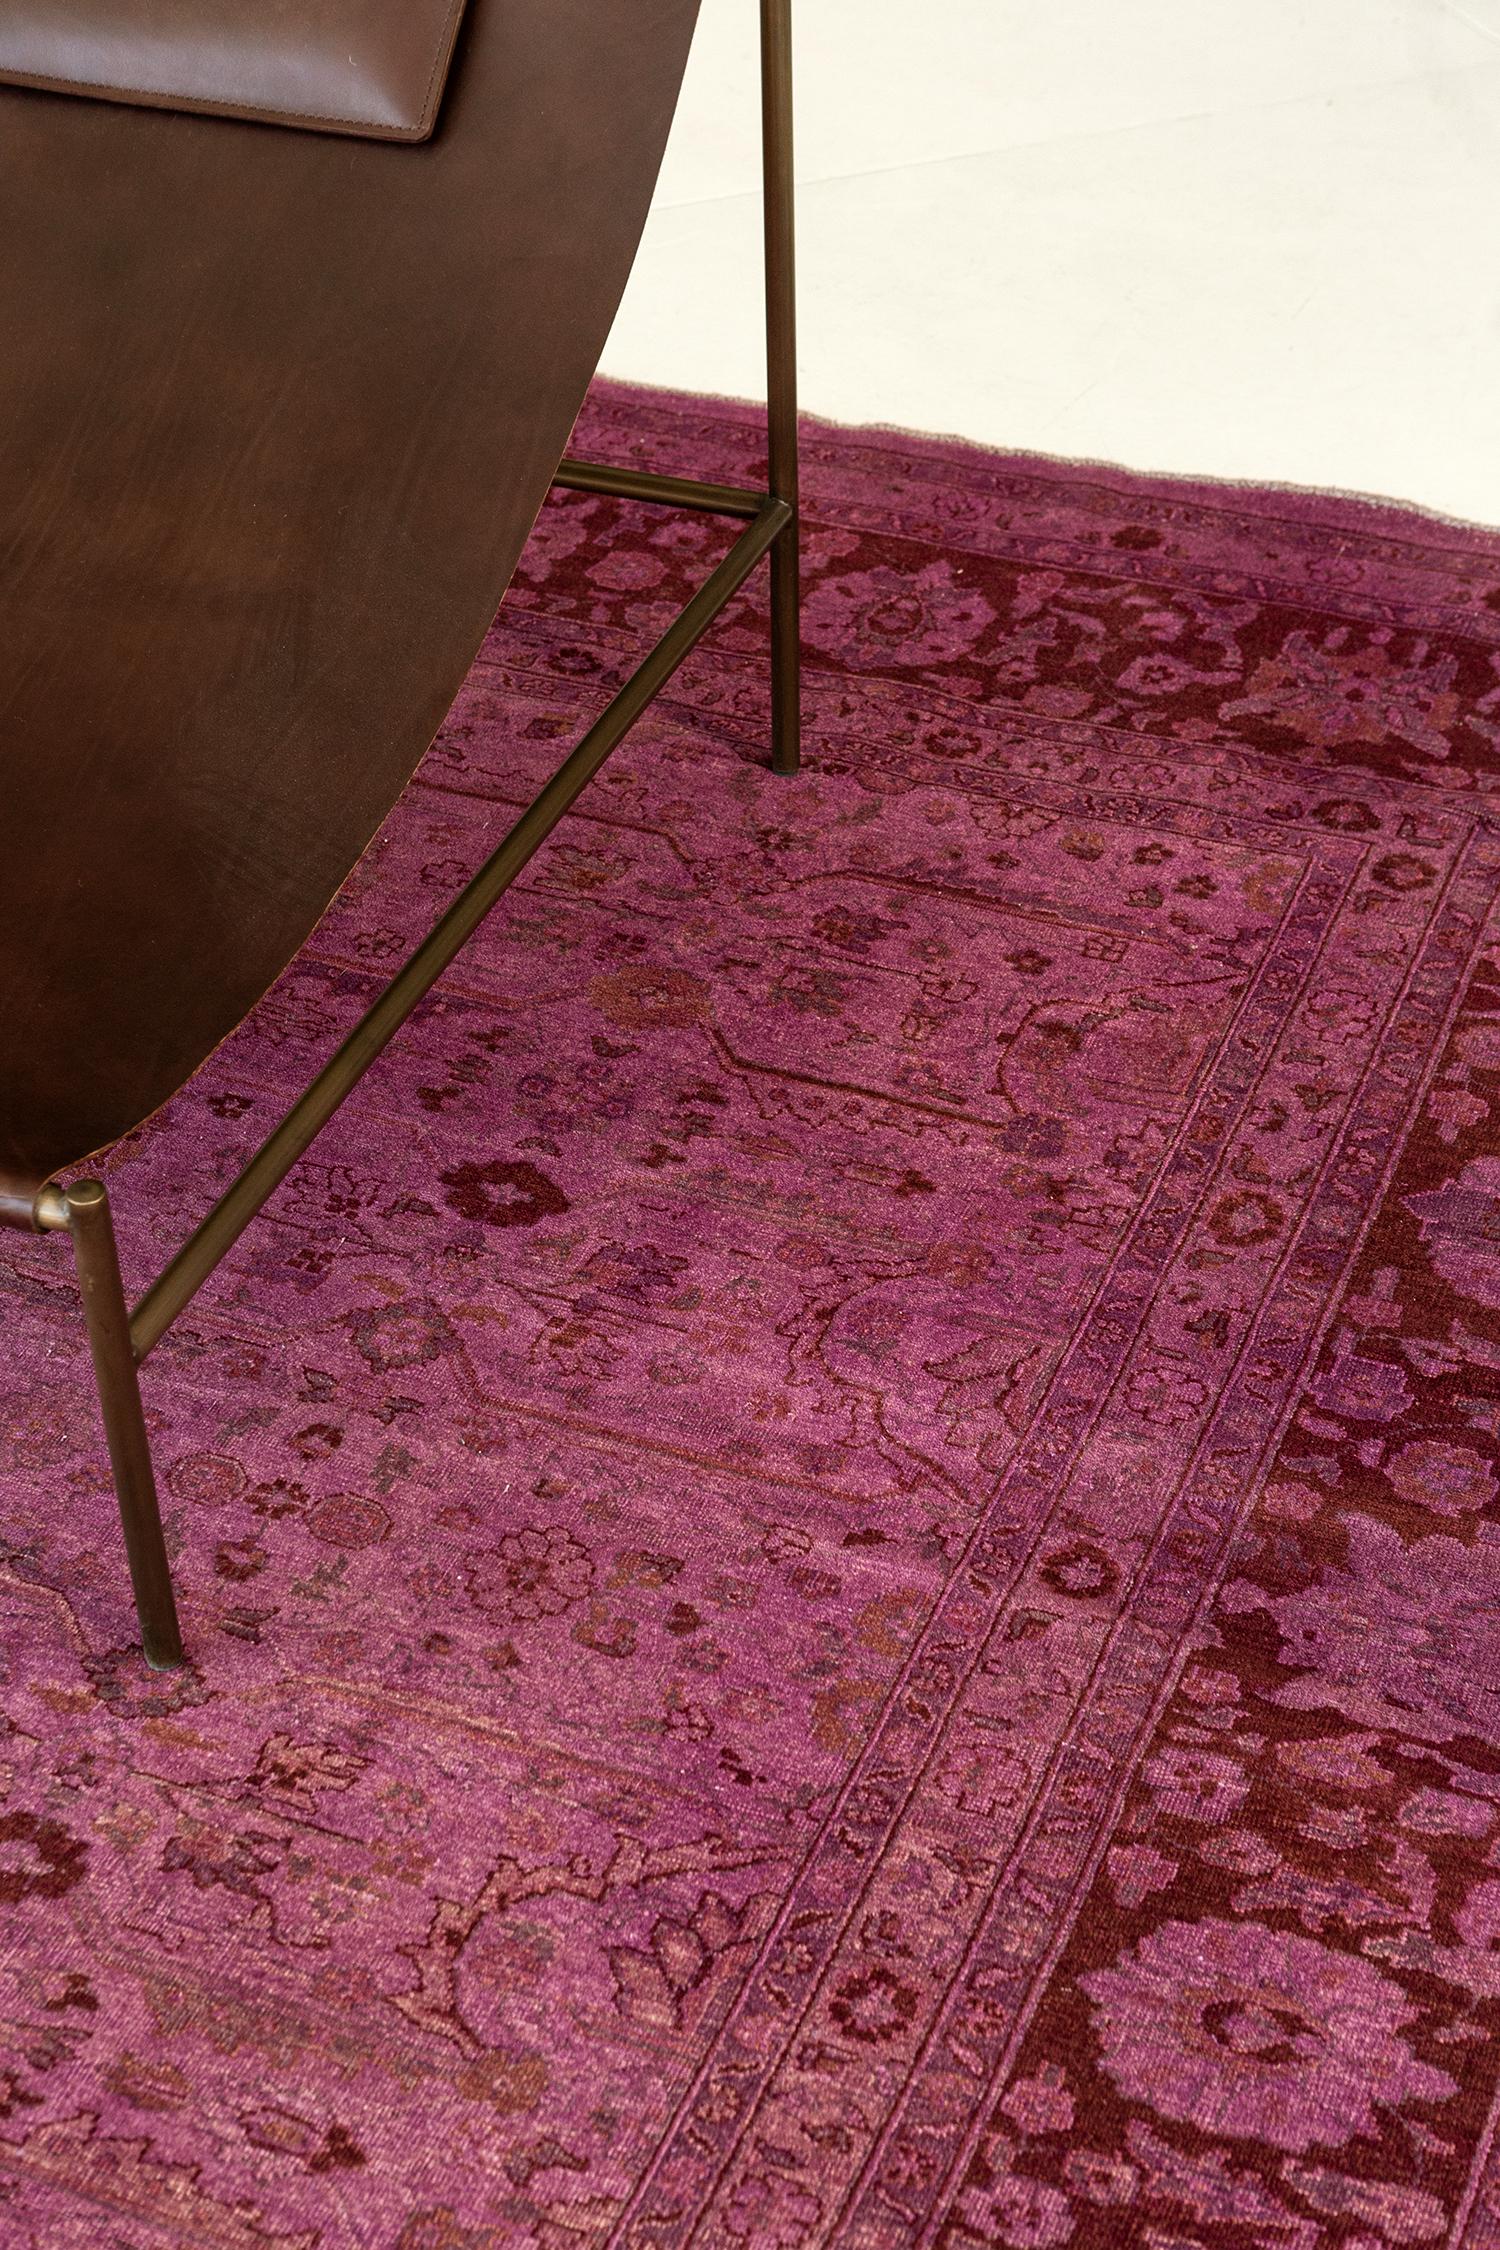 Un magnifique tapis surteint de style vintage, profondément saturé dans un ton orchidée envoûtant. Ce tapis polyvalent ajoutera une touche royale et un attrait extraordinaire à votre espace. Des intérieurs contemporains ou modernes aux intérieurs